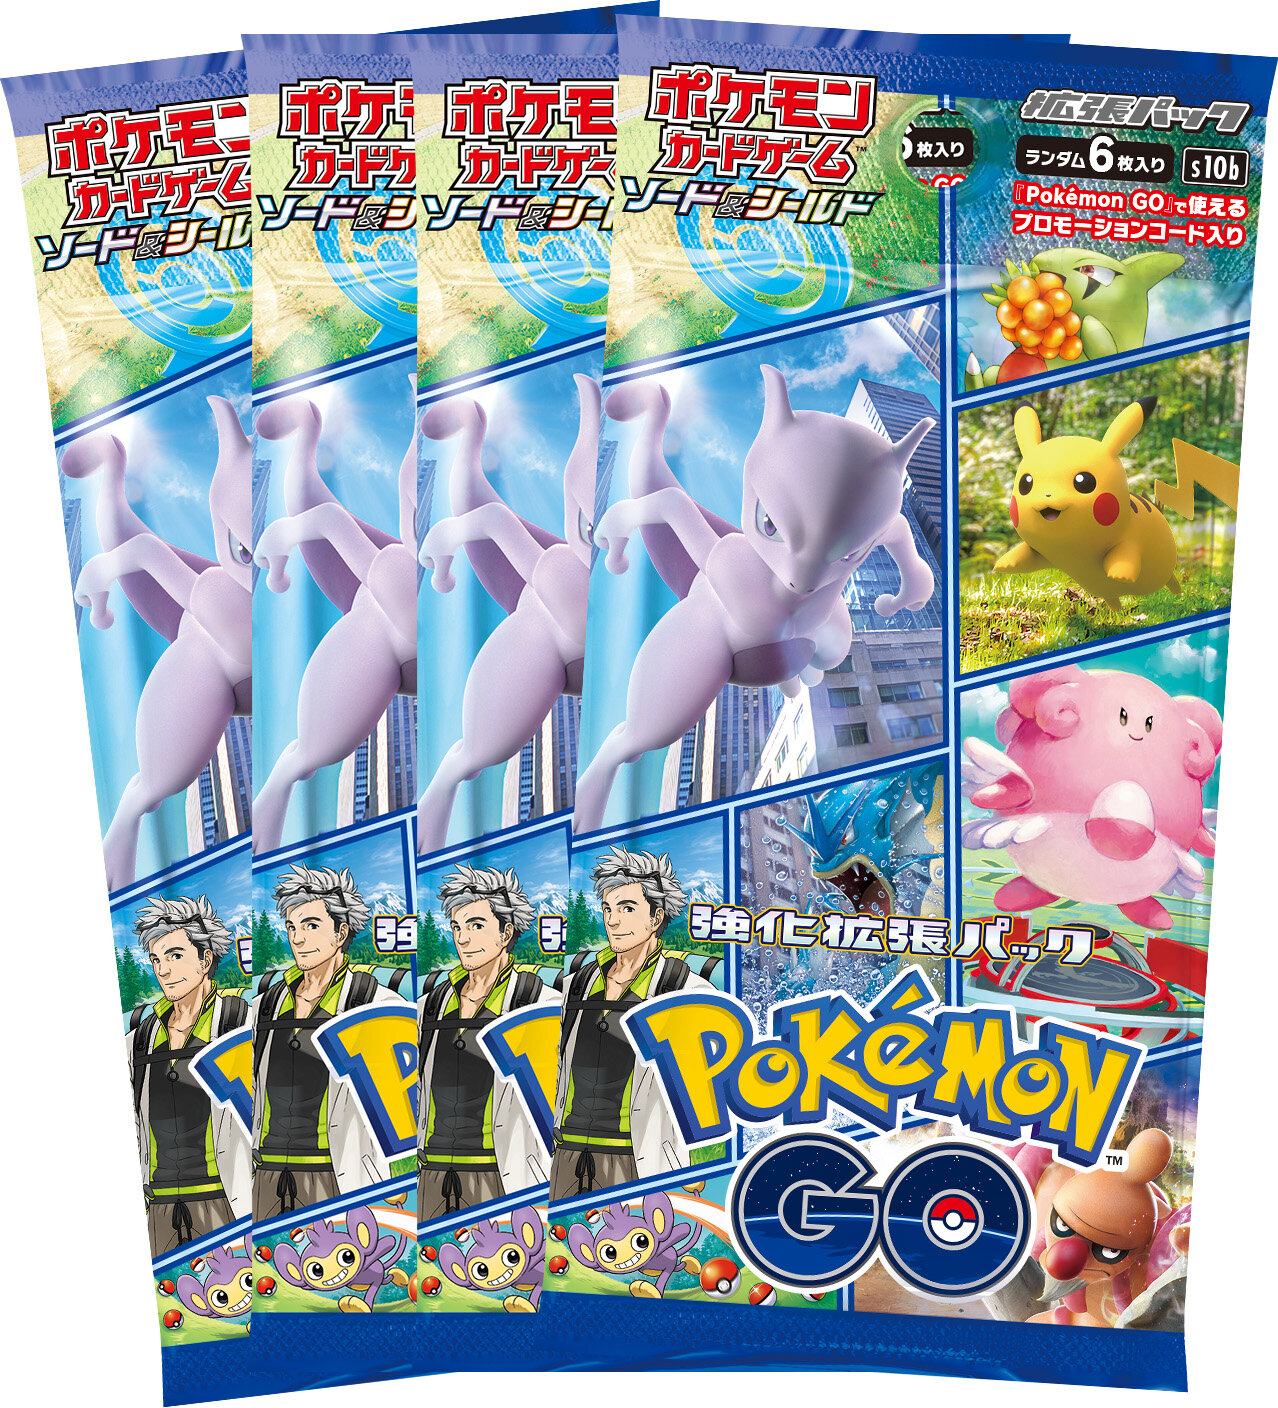 強化拡張パック「Pokémon GO」の入った、セット商品2種類の内容